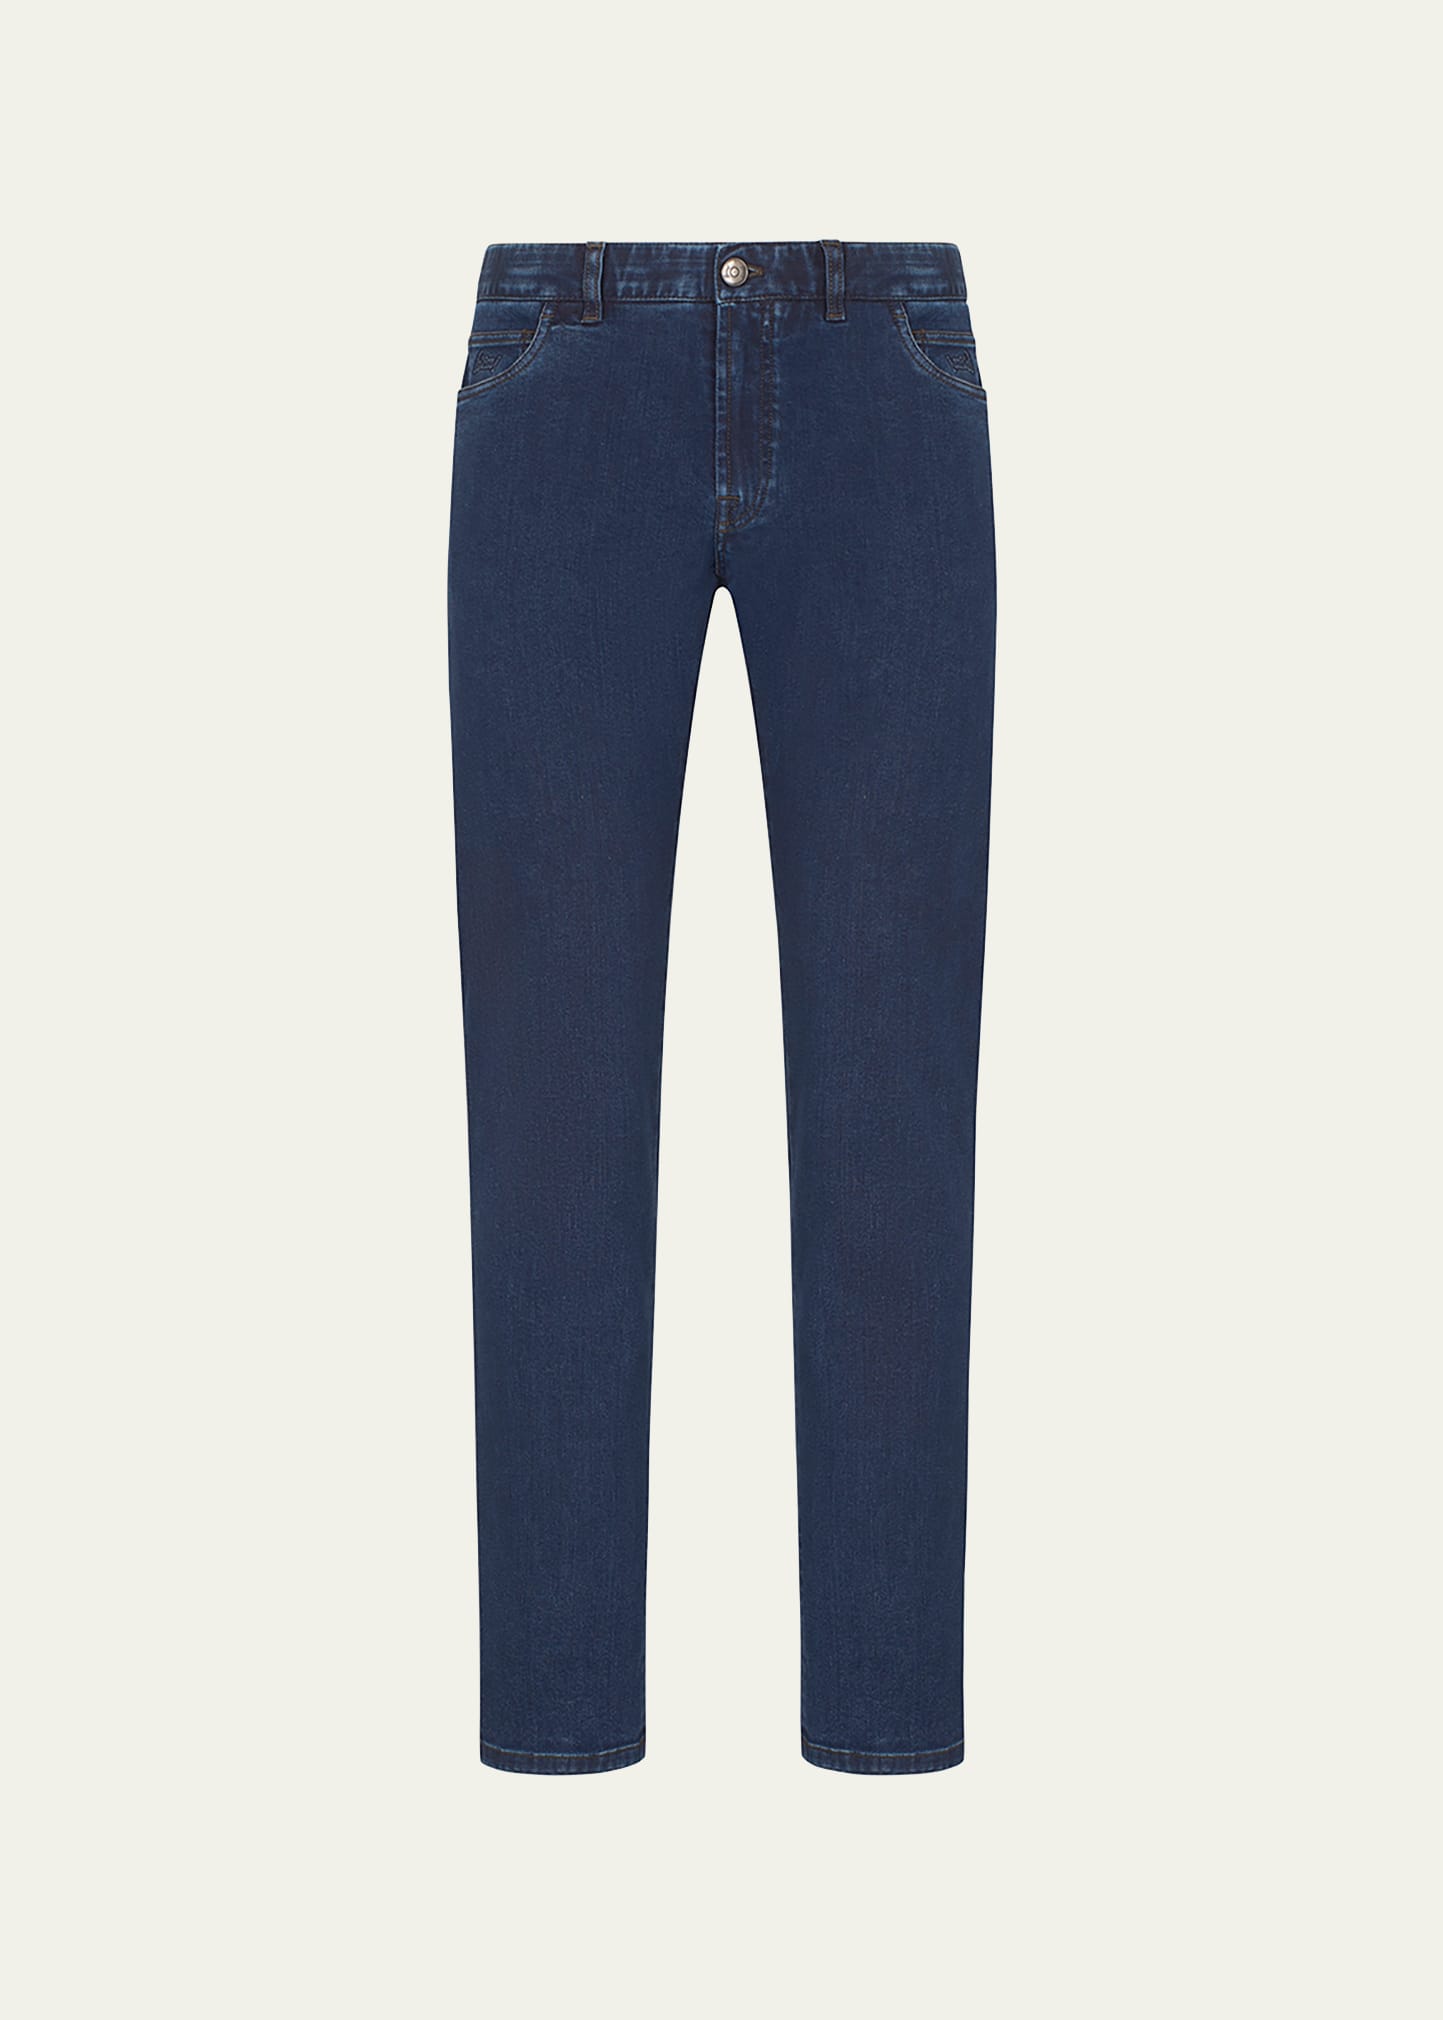 Men's 5-Pocket Denim Jeans